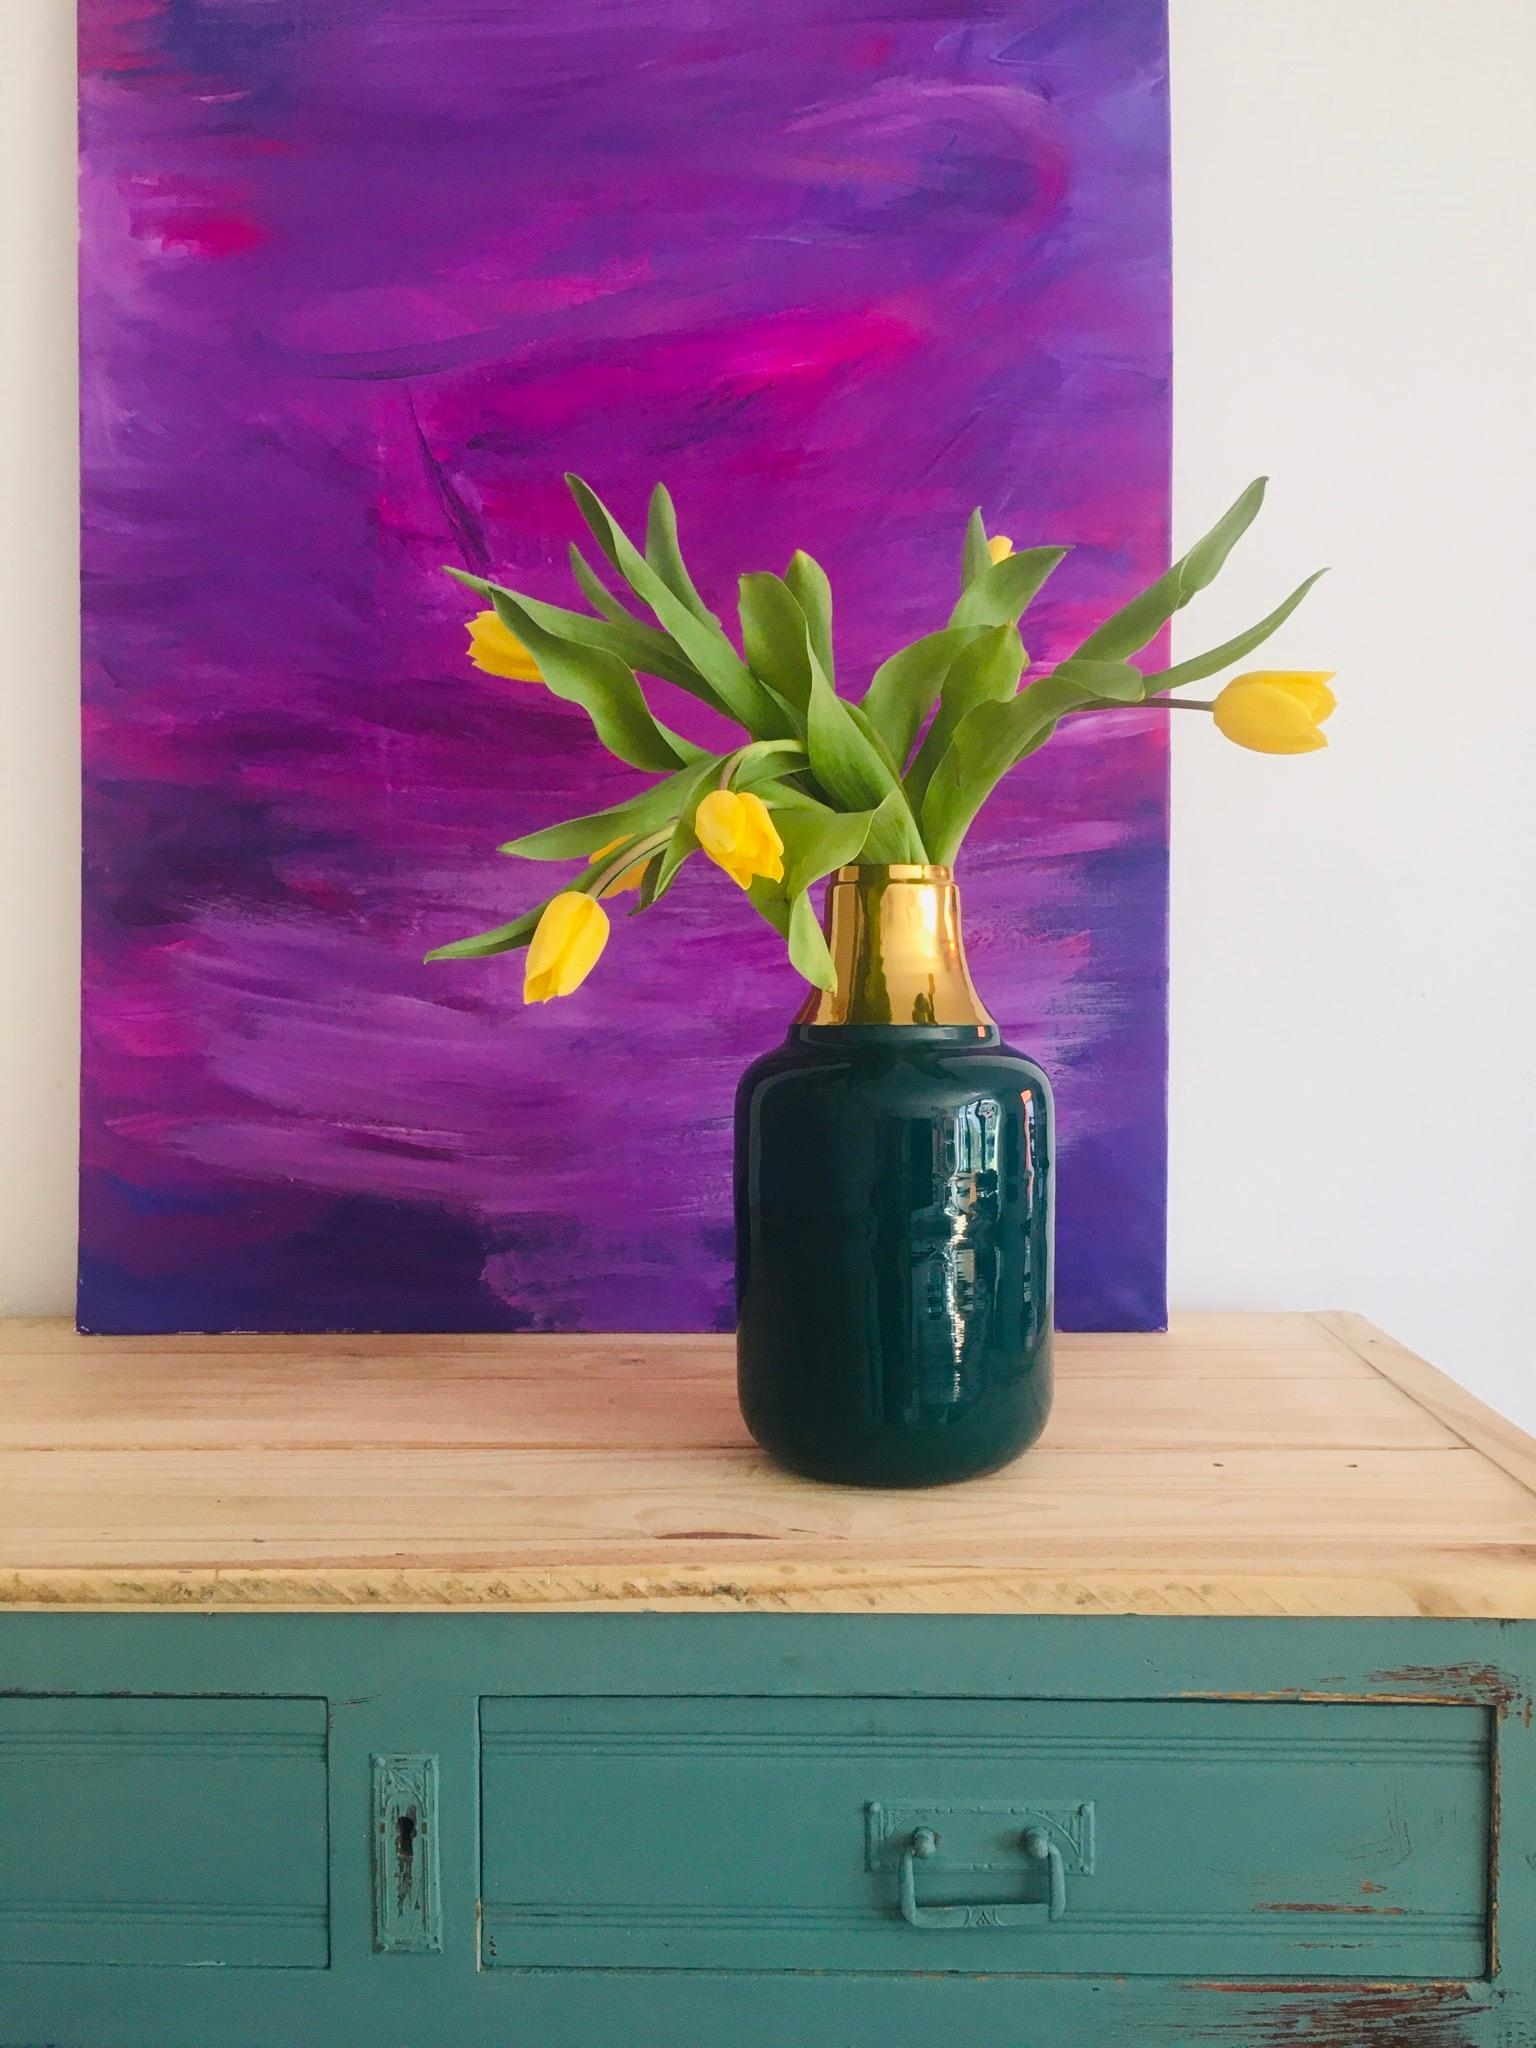 Ich liebe Farben. Malen und frische Blumen machen mich heute unfassbar glücklich. #paintings #interior #farbenfroh